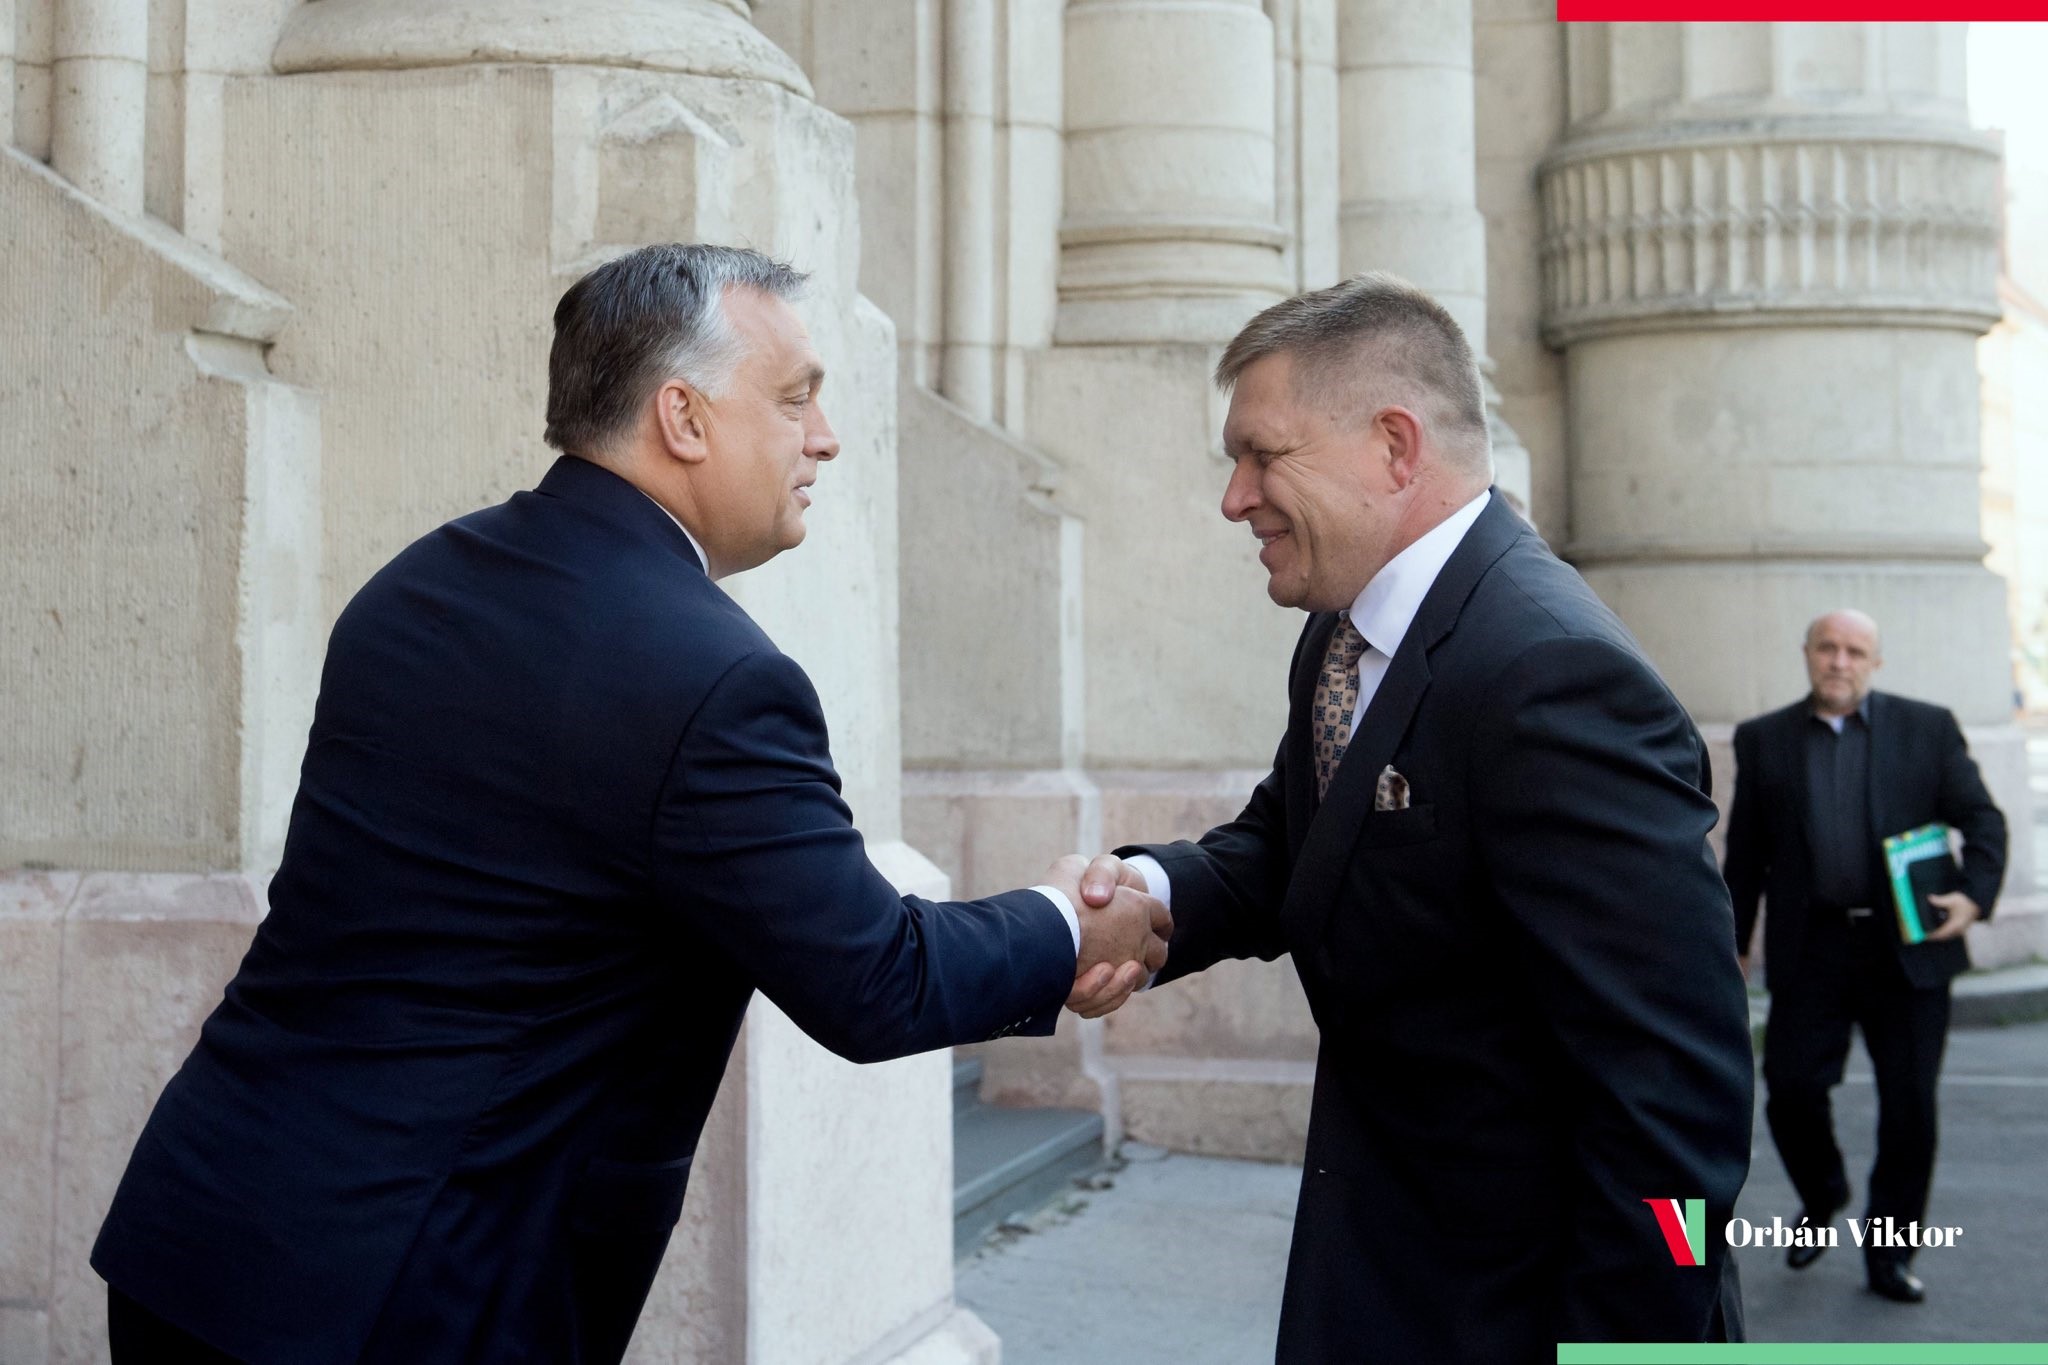 Orbán: Találd ki, ki jött vissza! 